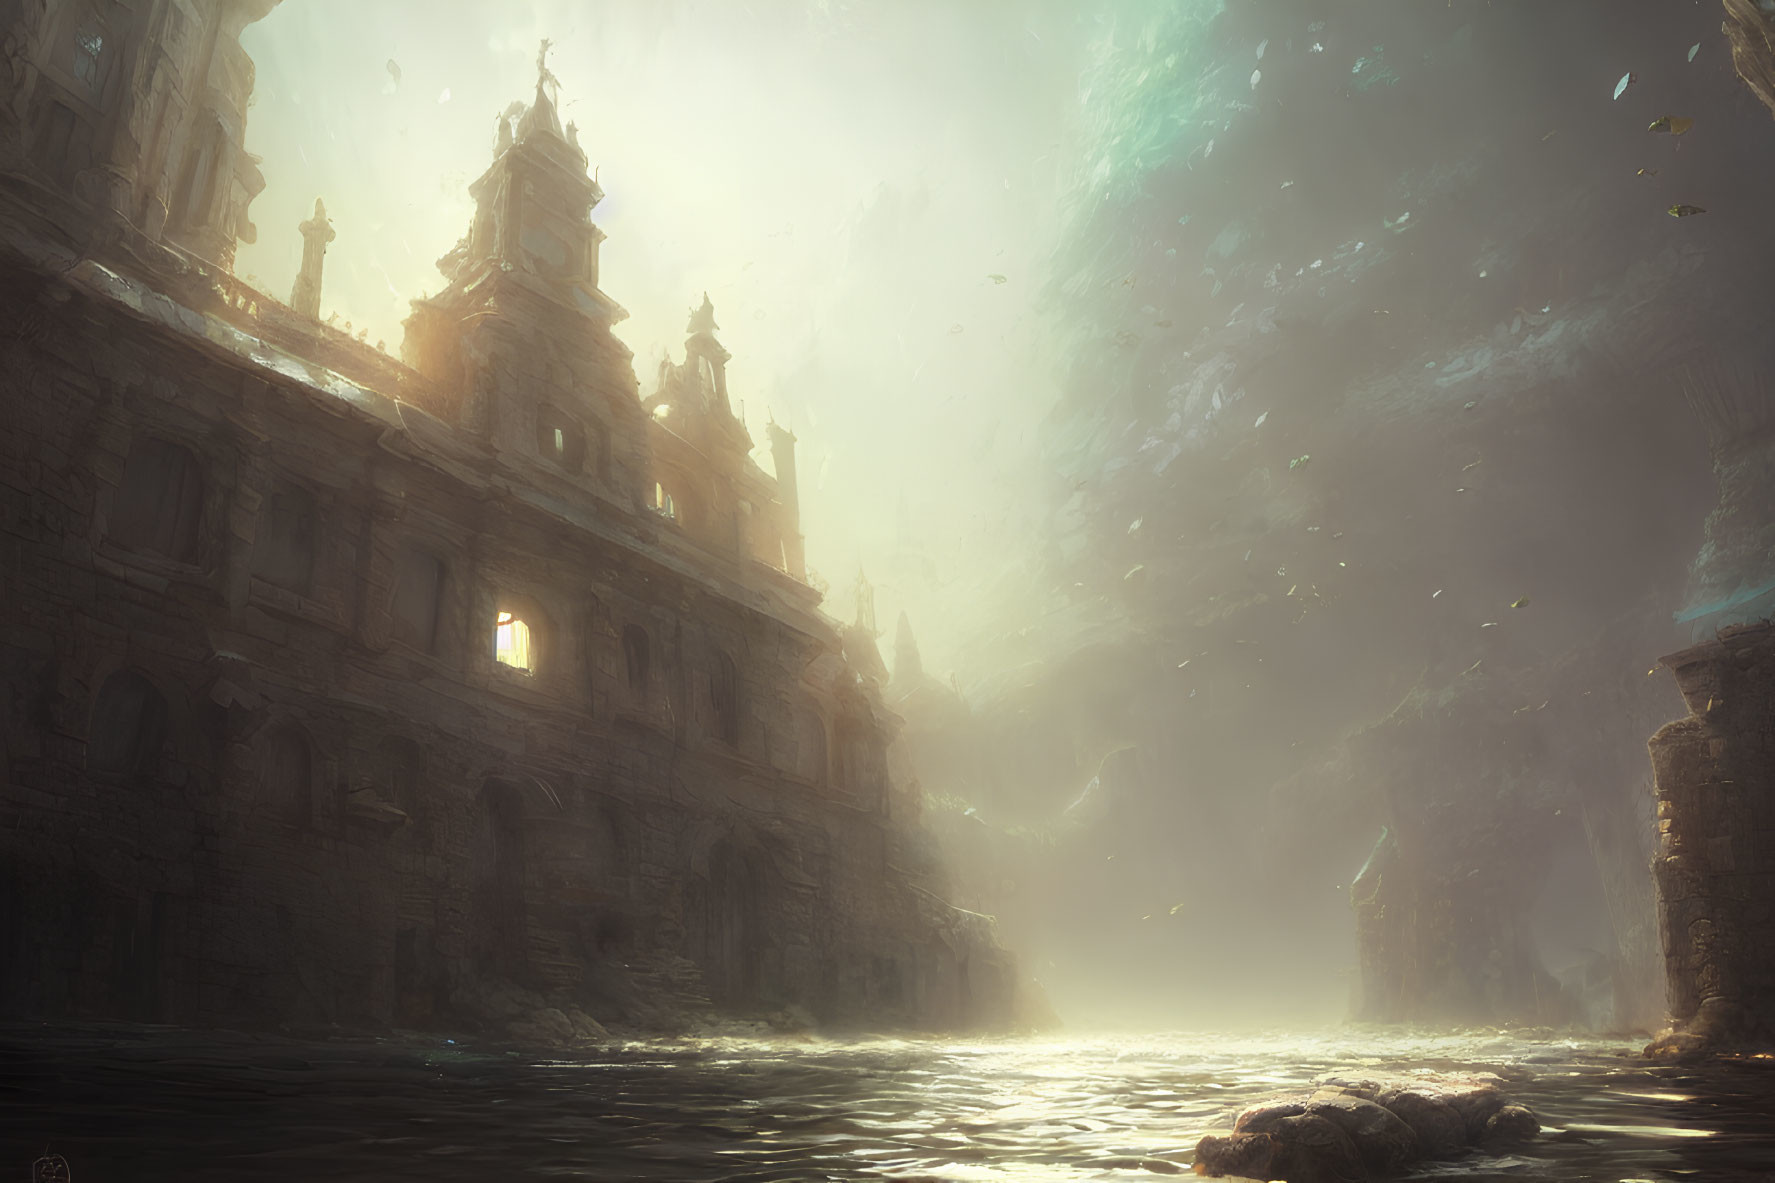 Sunlit ancient baroque structures in misty underwater scene